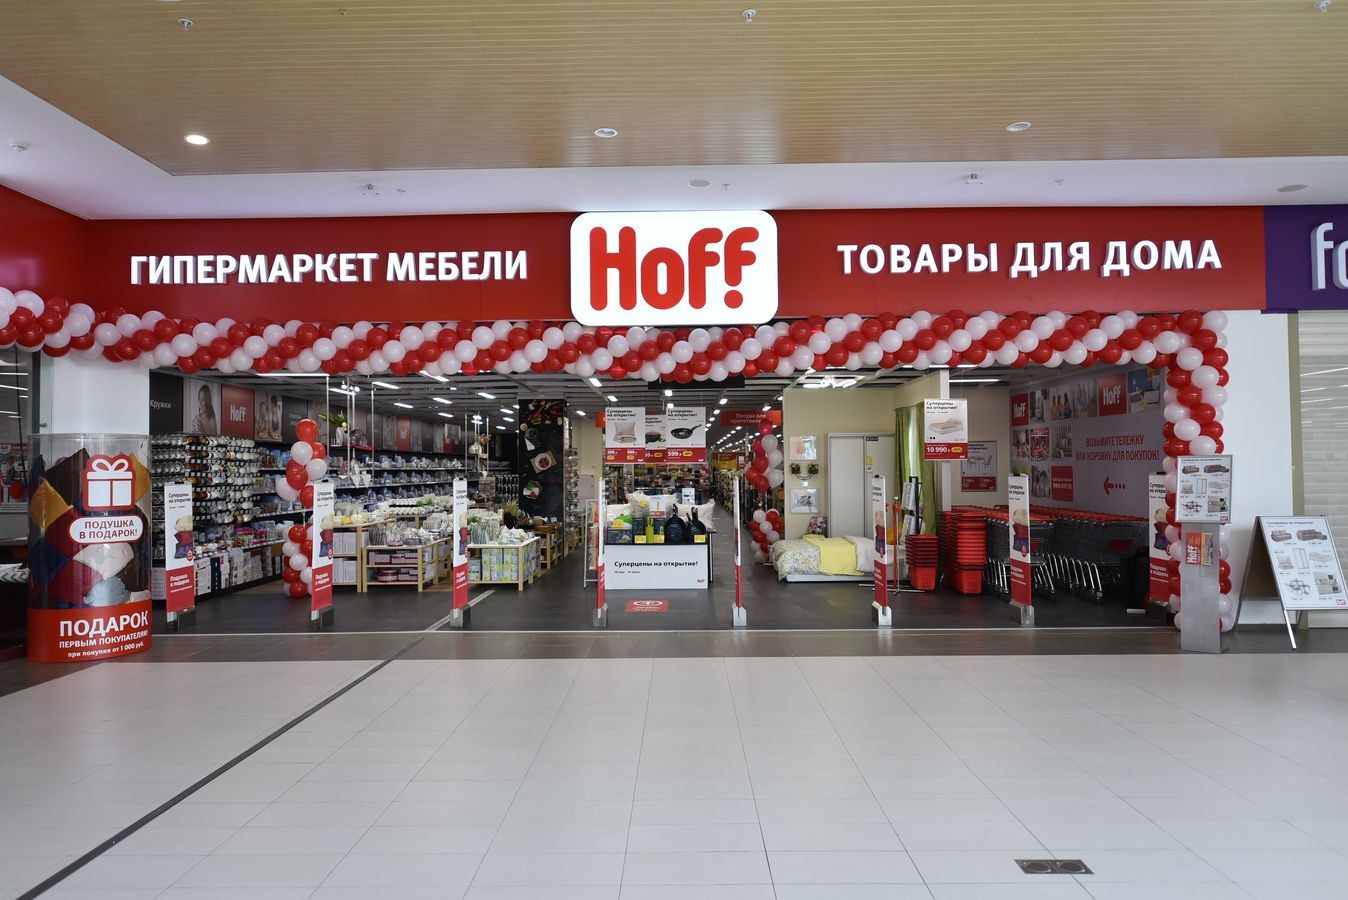 Гипермаркет мебели и товаров для дома. Hoff магазин. Магазин Hoff в Волгограде. Хофф акварель Волгоград. Гипермаркет с мебелью и товарами для дома.